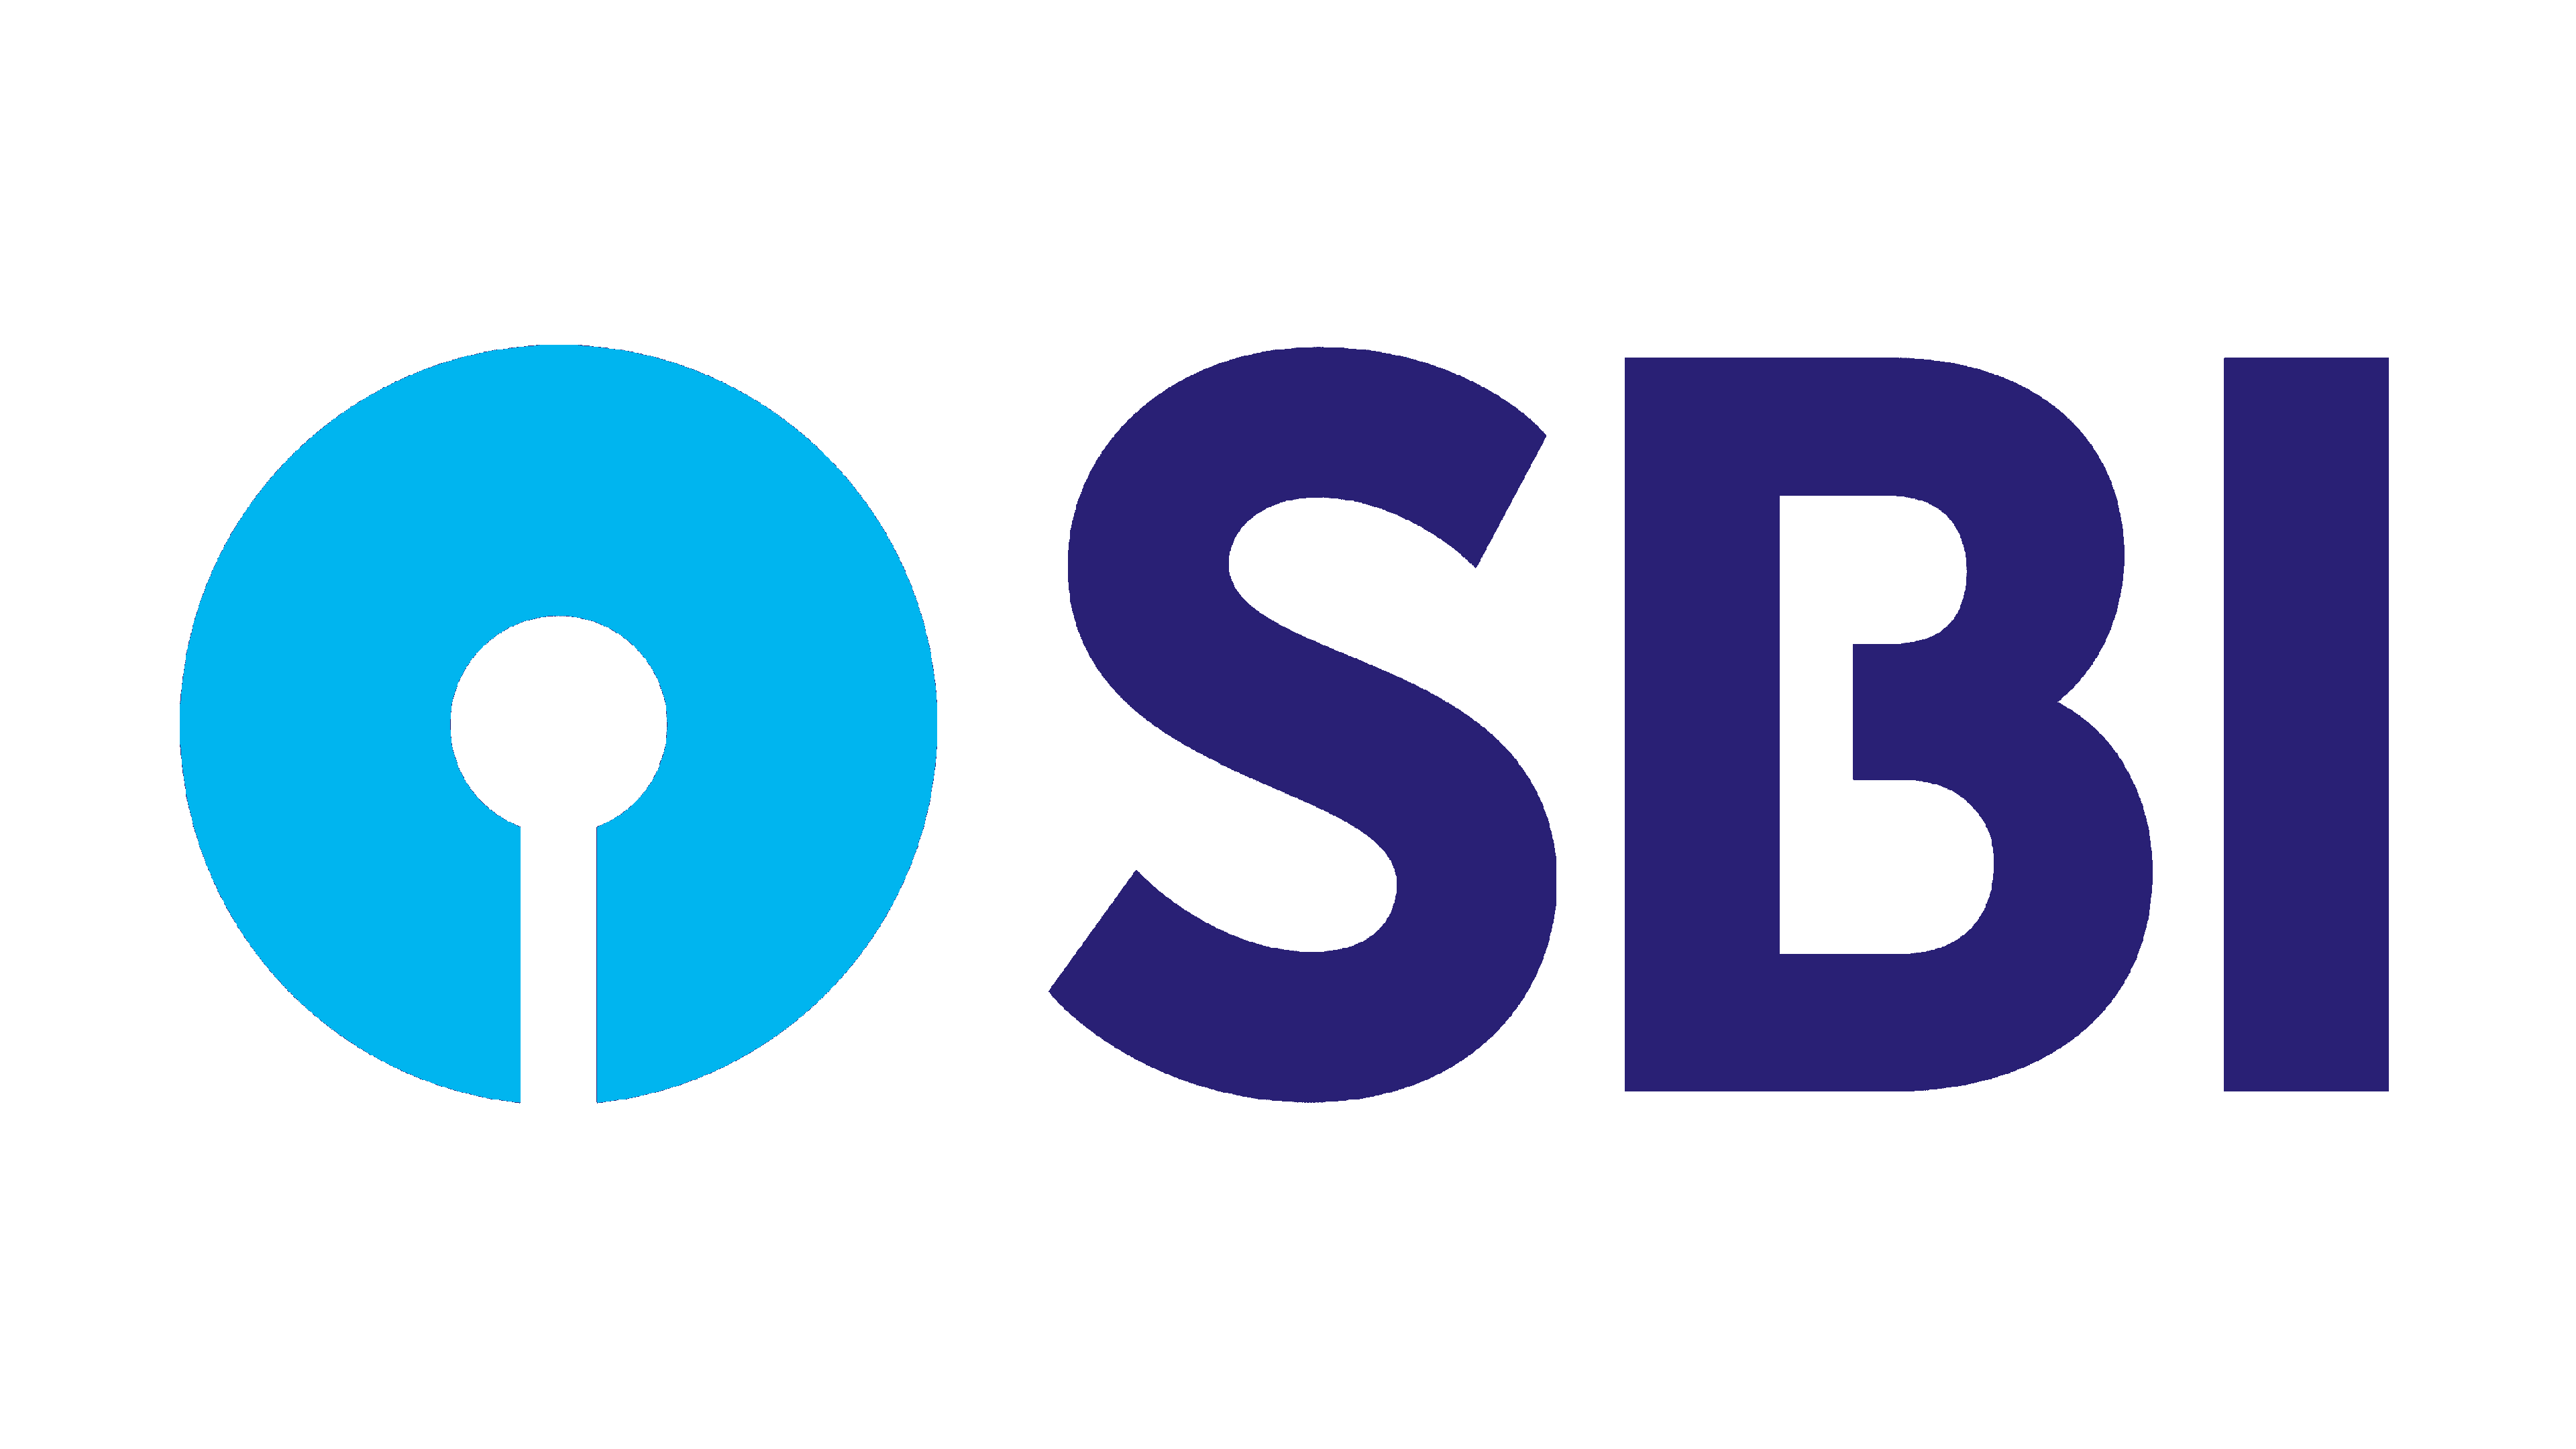 SBI Logo Logo